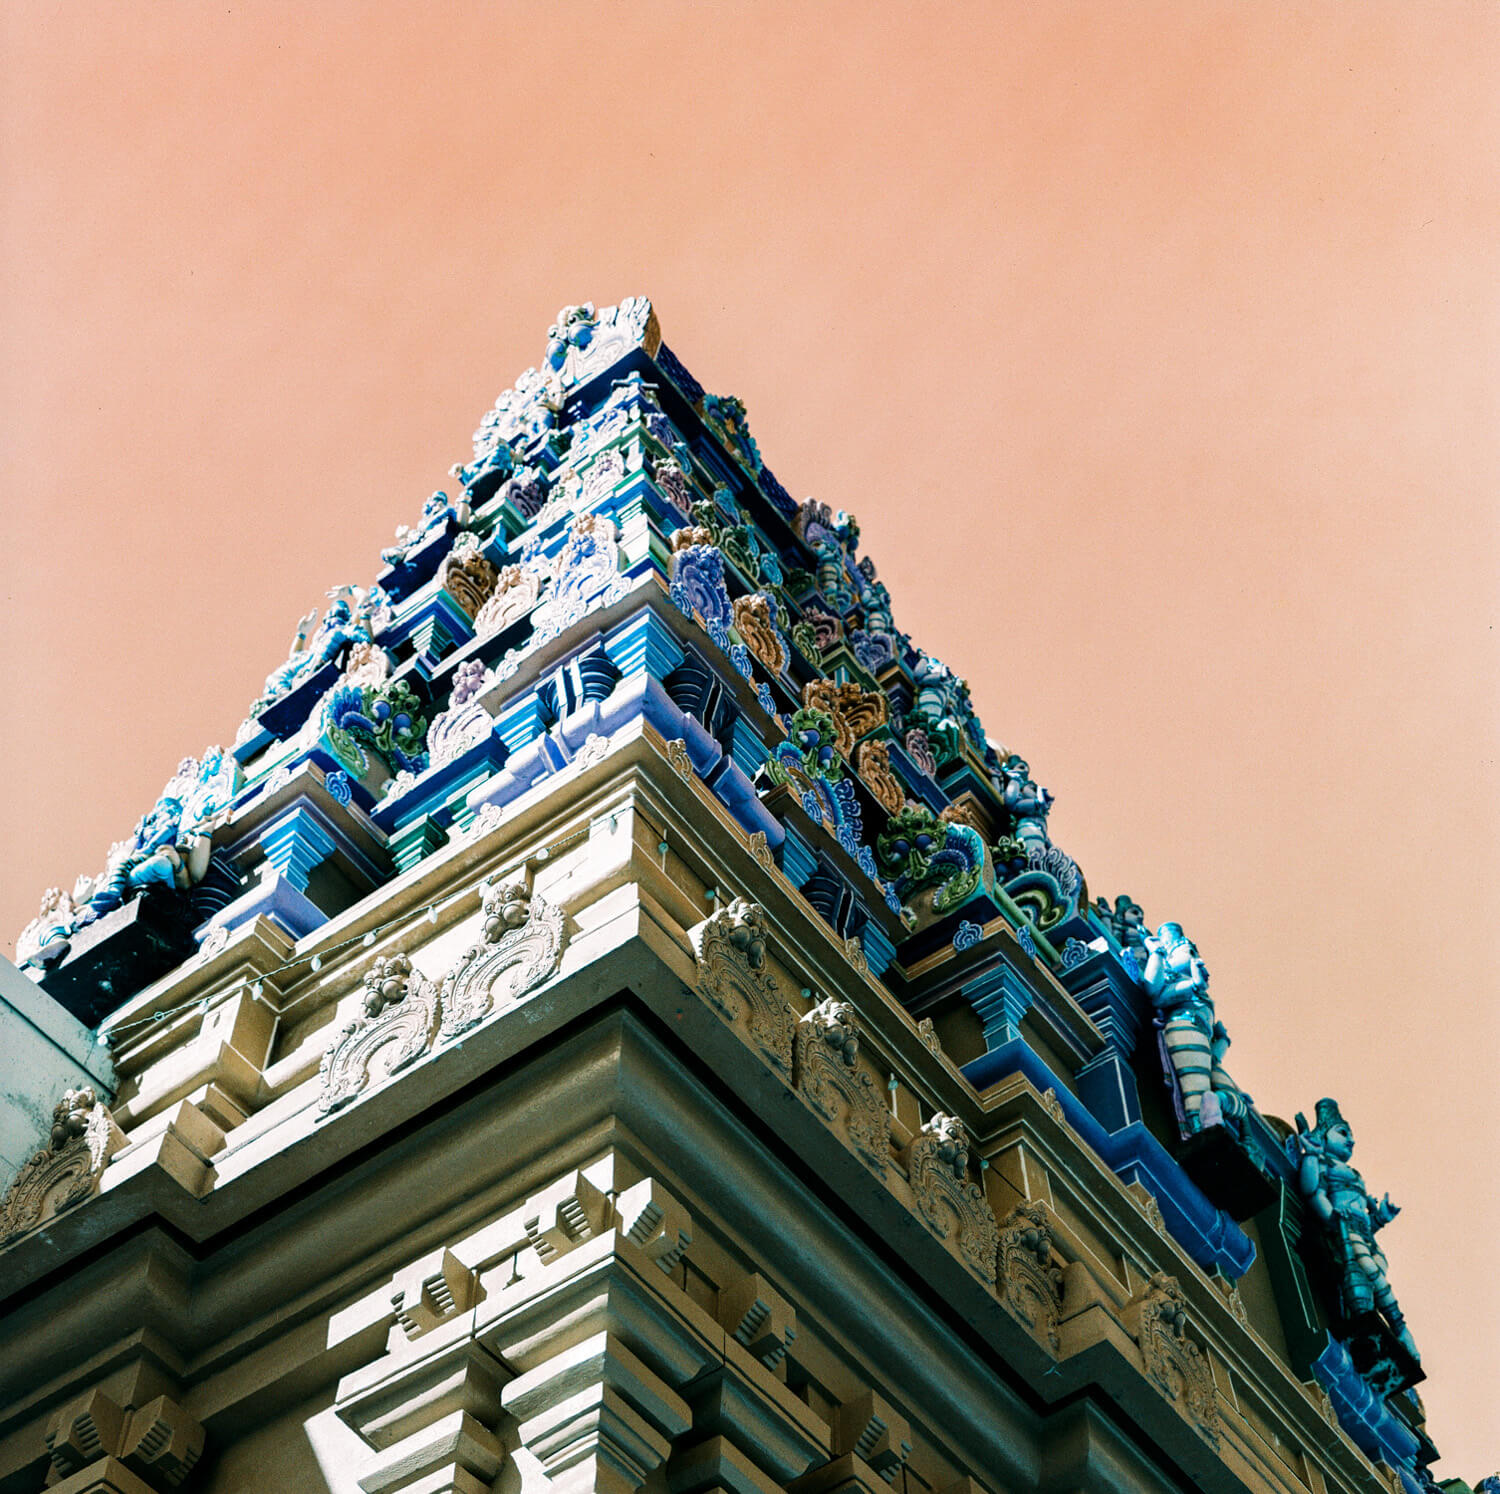 Temple - LomoChrome Turquoise XR 100-400